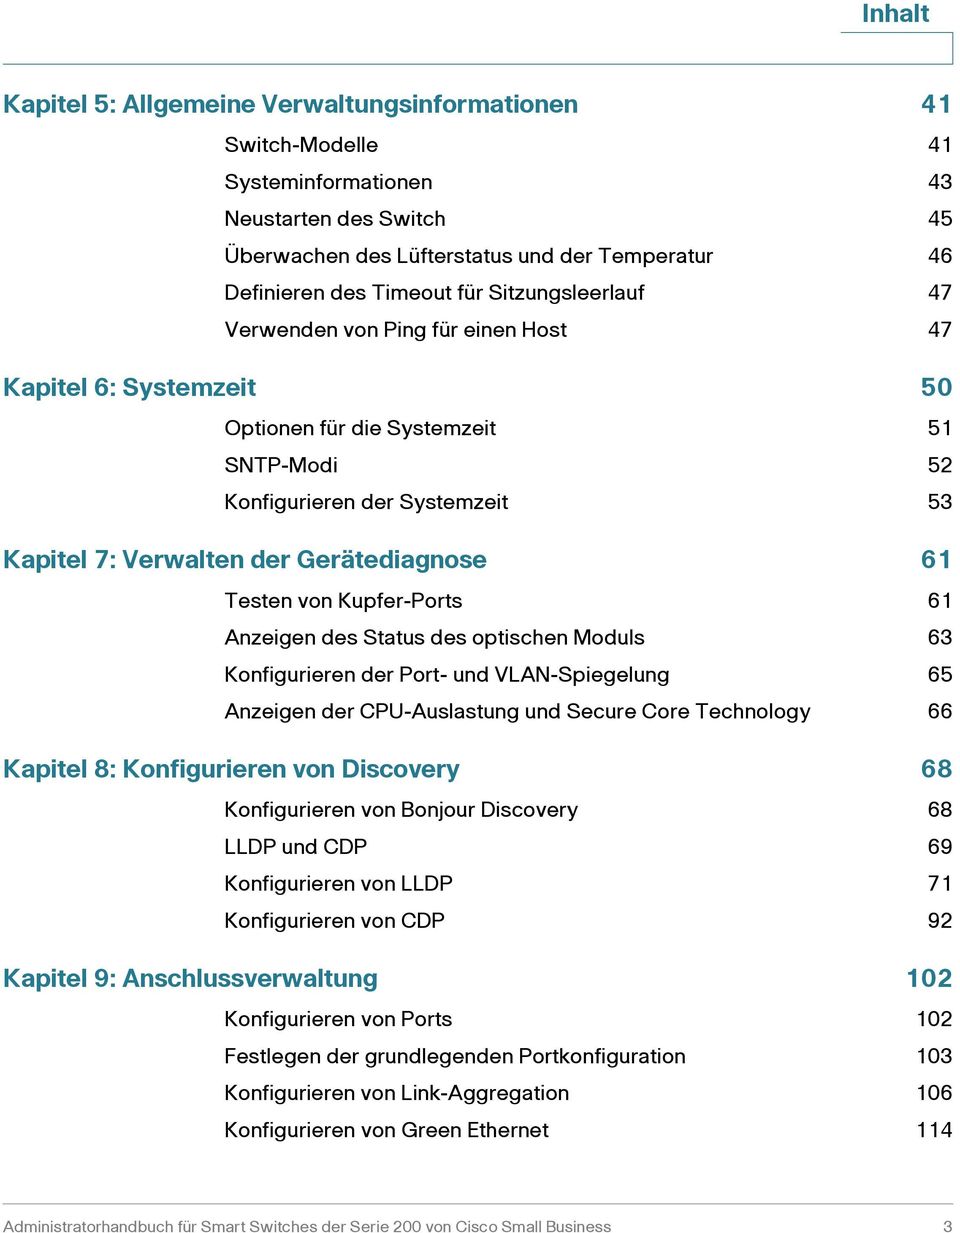 61 Testen von Kupfer-Ports 61 Anzeigen des Status des optischen Moduls 63 Konfigurieren der Port- und VLAN-Spiegelung 65 Anzeigen der CPU-Auslastung und Secure Core Technology 66 Kapitel 8: